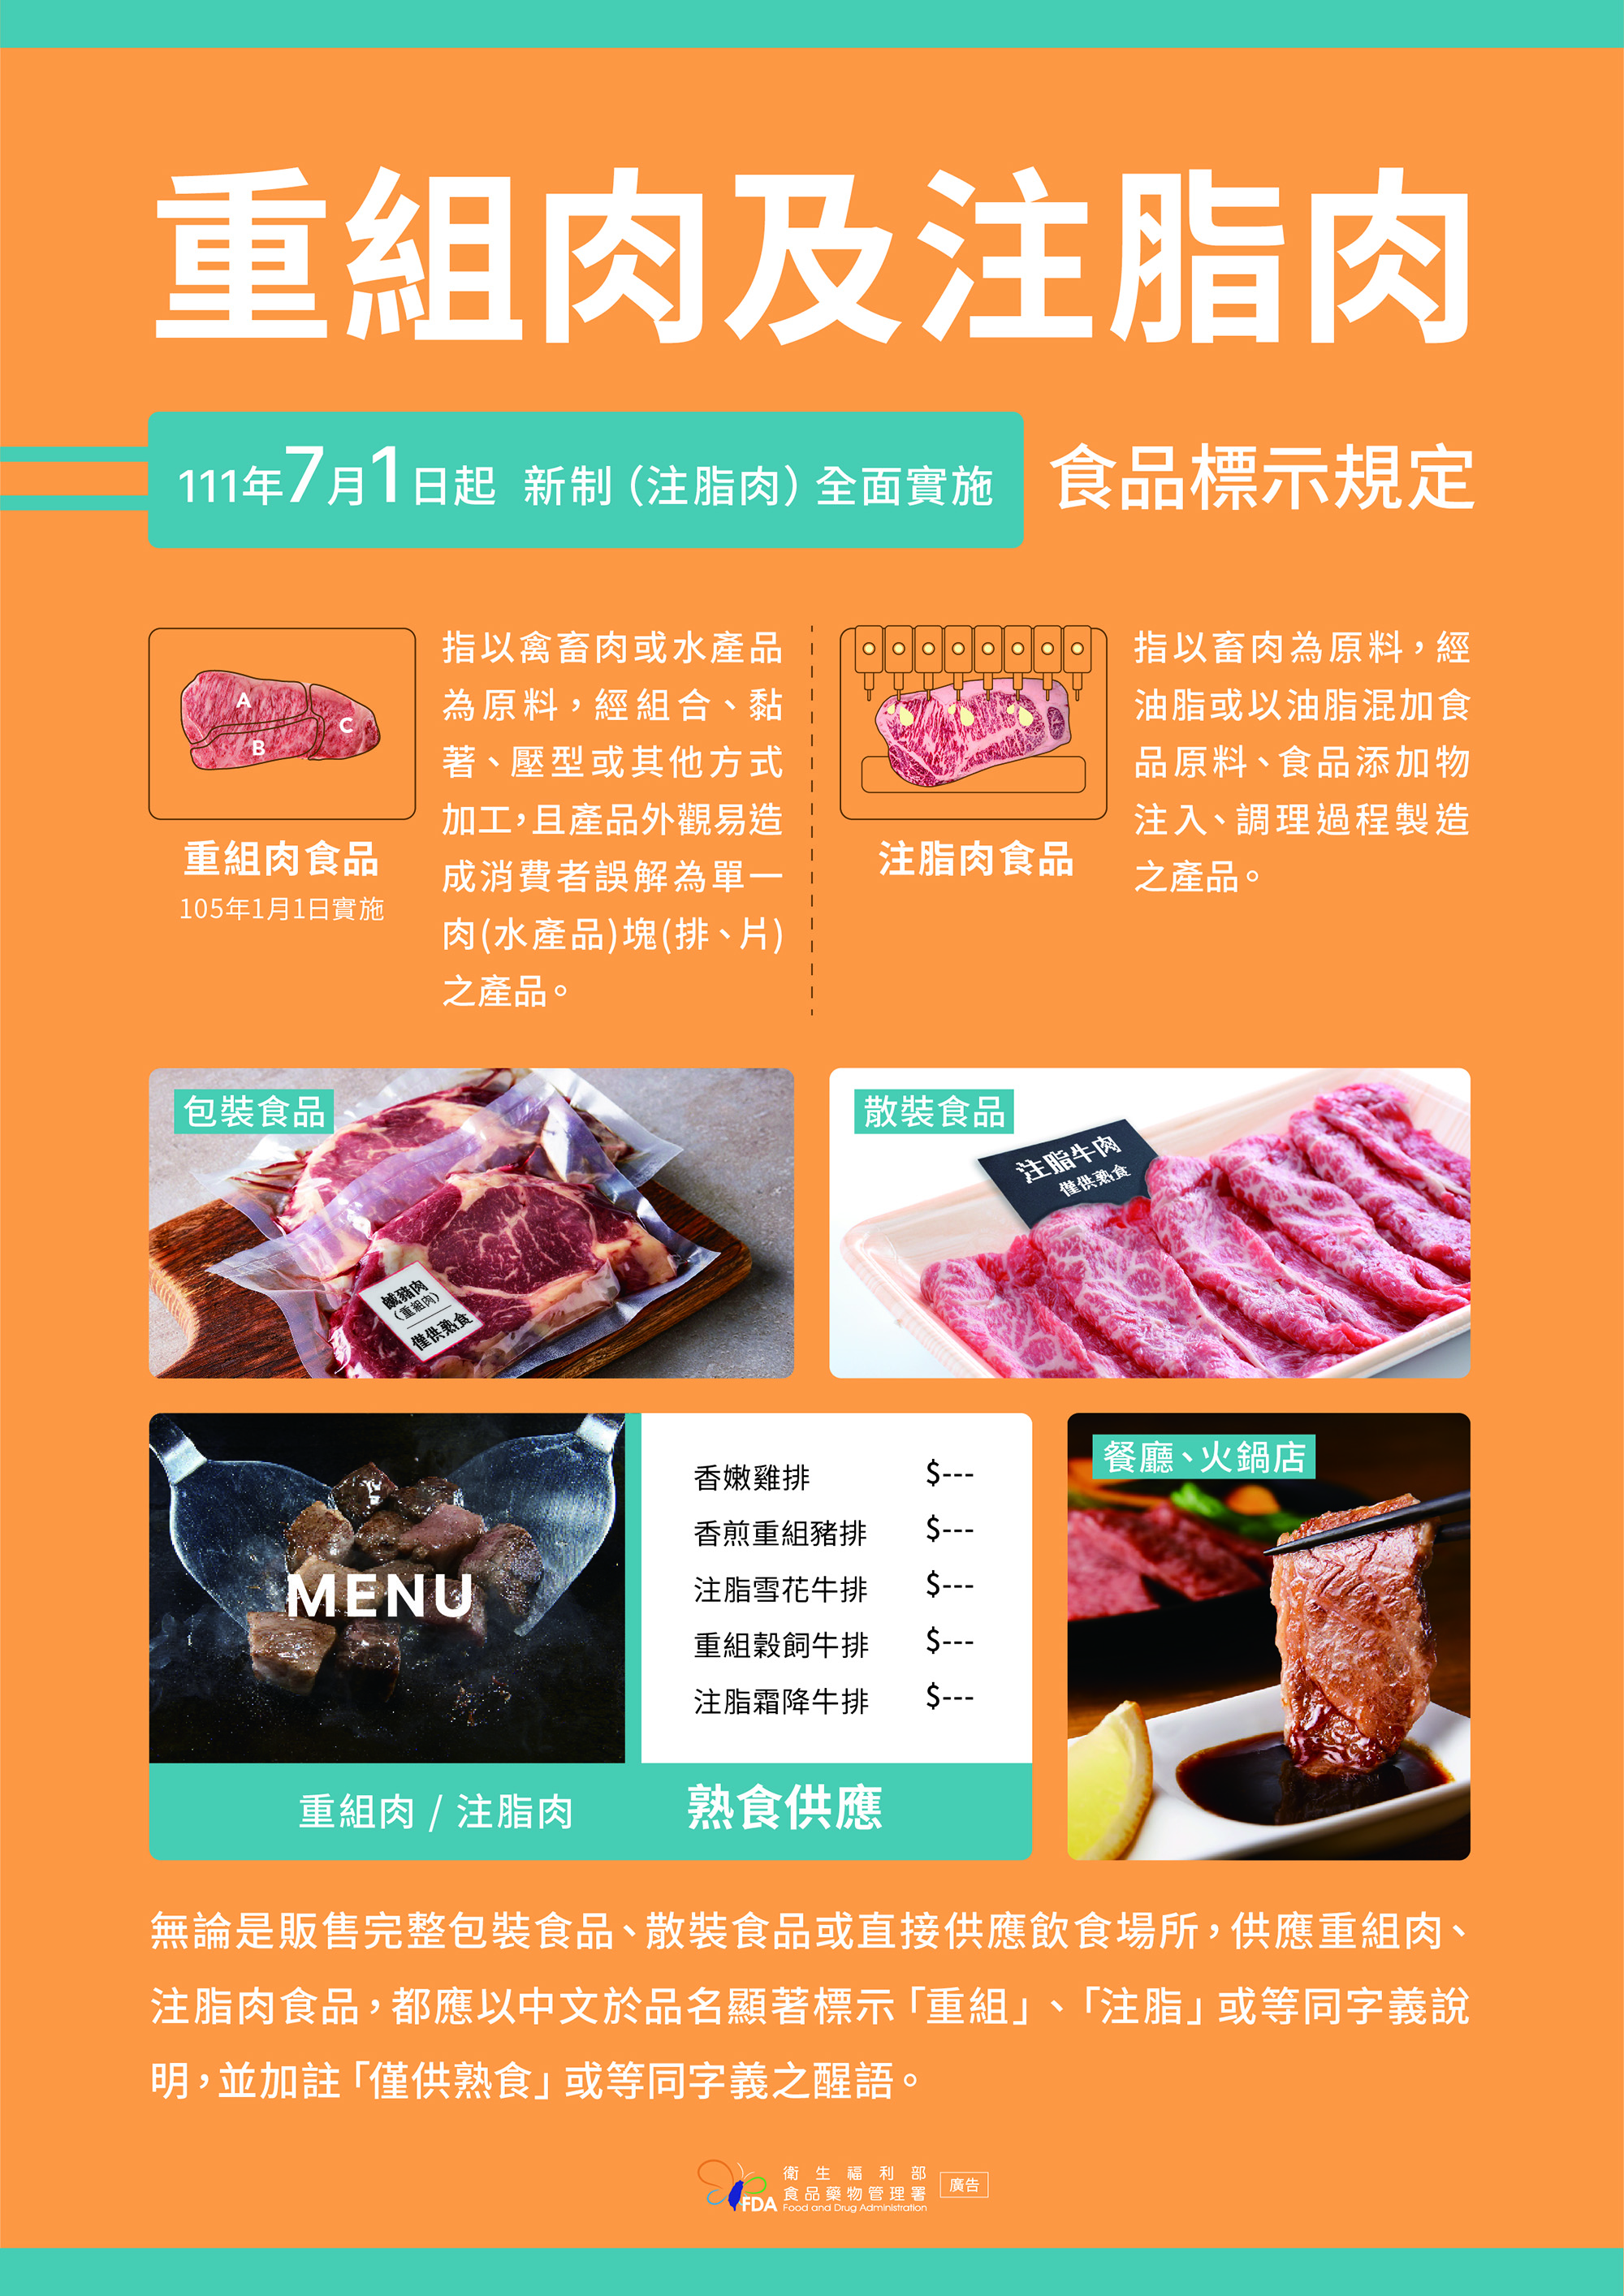 重組肉及注脂肉食品標示規定宣導-懶人包